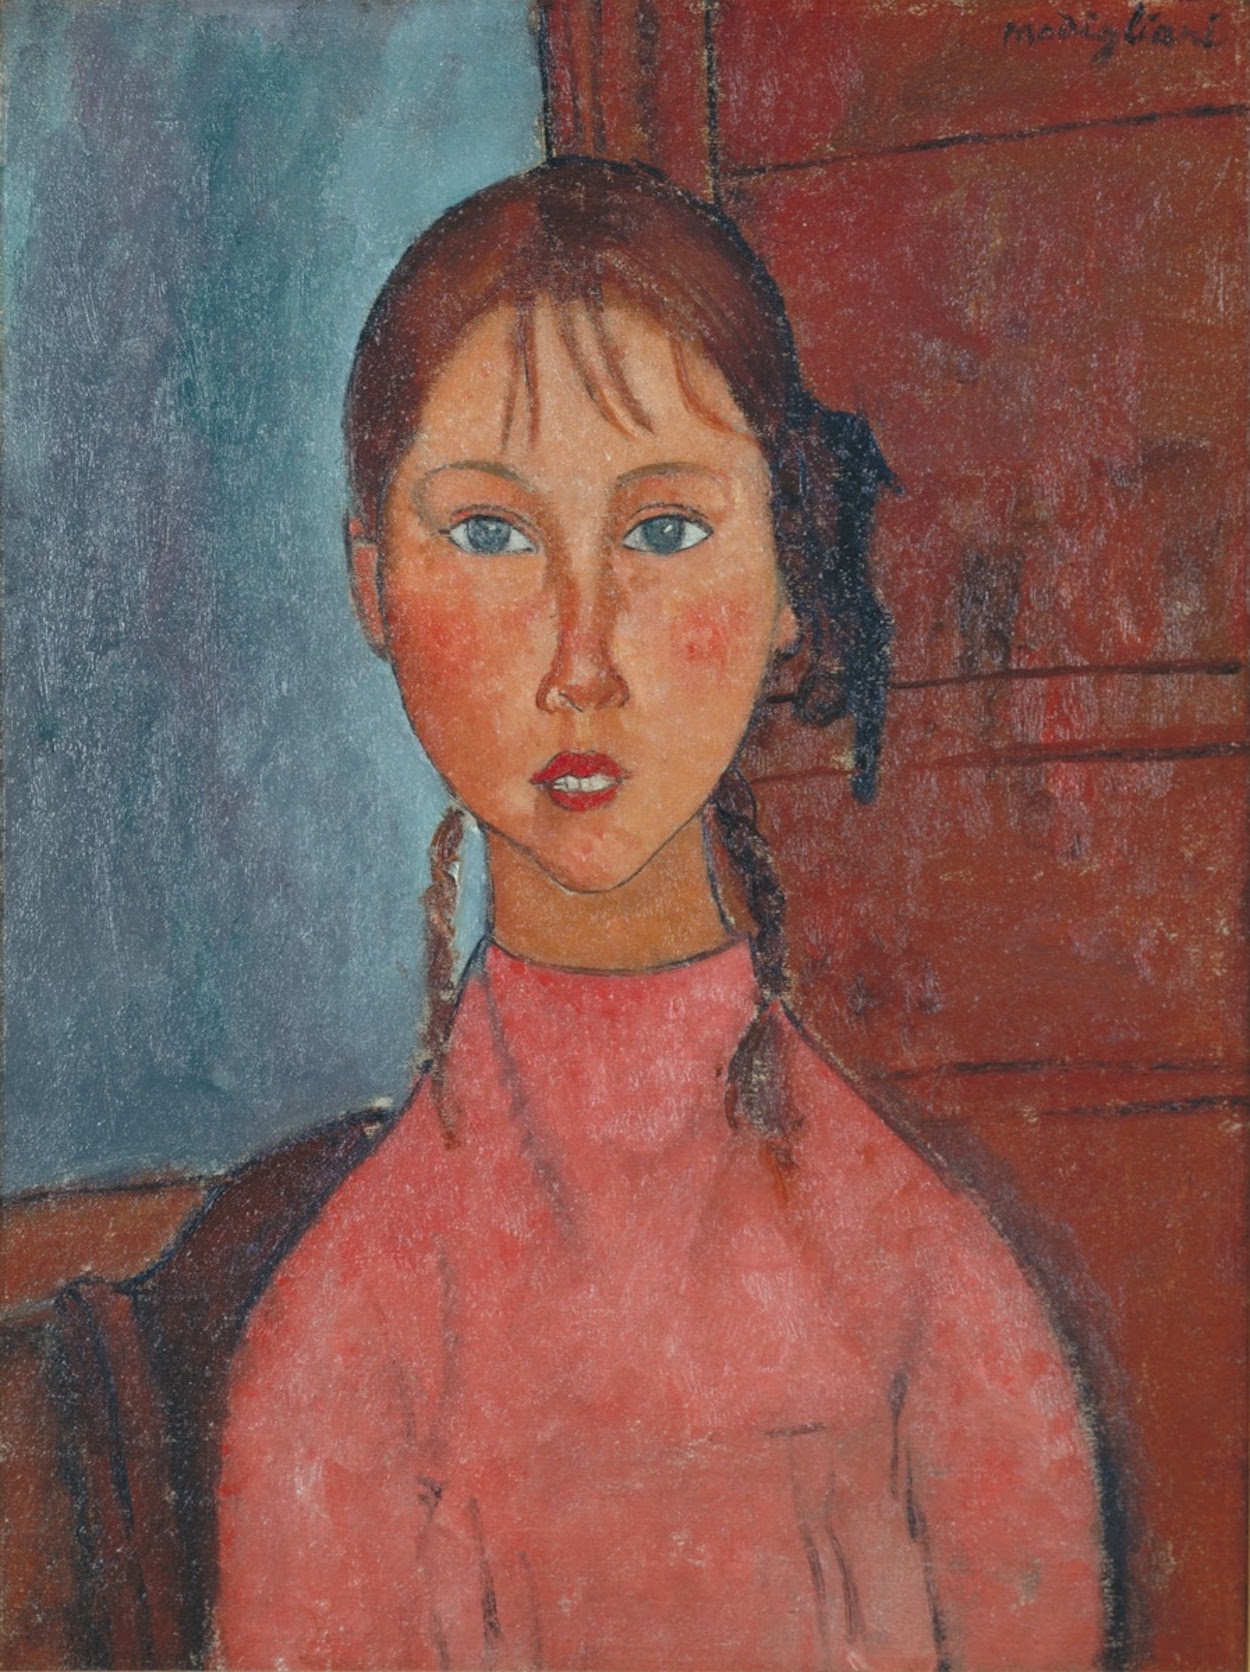 Dívka s copánky by Amedeo Modigliani - cca 1918 - 60 × 45,5 cm 